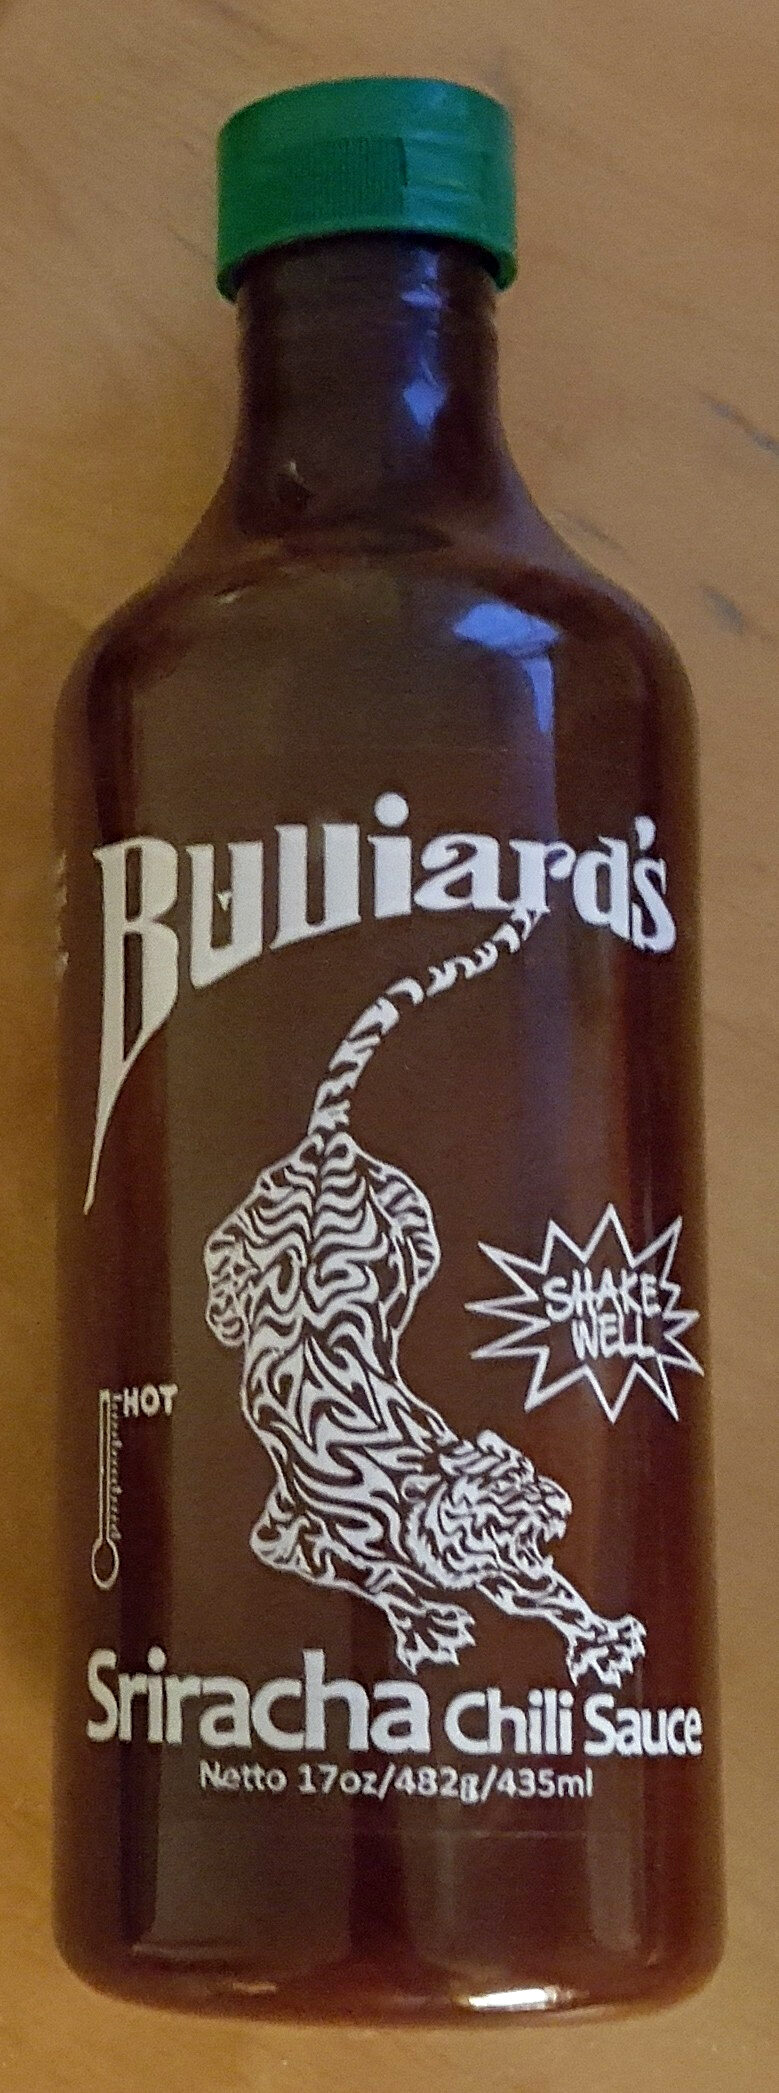 Bulliard's Sriracha Chili Sauce - Produkt